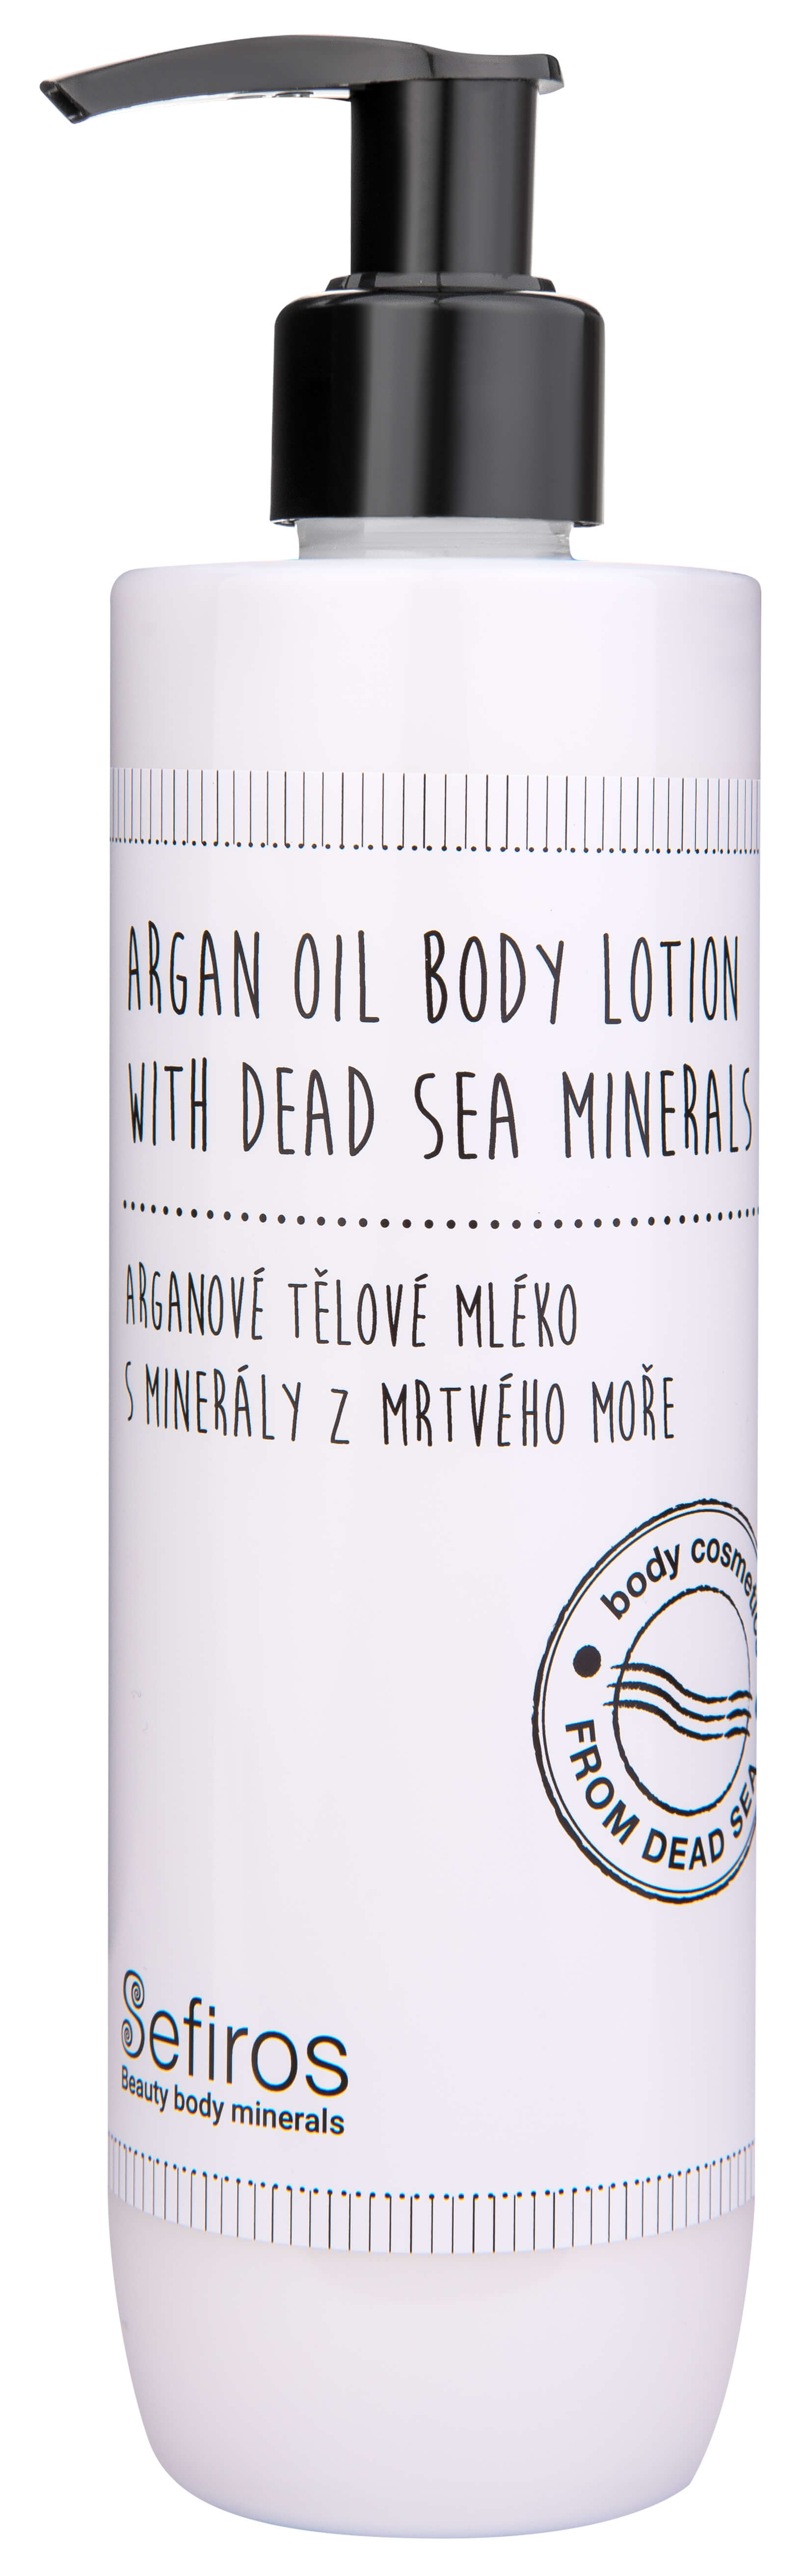 Sefiros Arganové telové mlieko s minerálmi z Mŕtveho mora ( Argan Oil Body Lotion With Dead Sea Mineral s) 300 ml + 2 mesiace na vrátenie tovaru